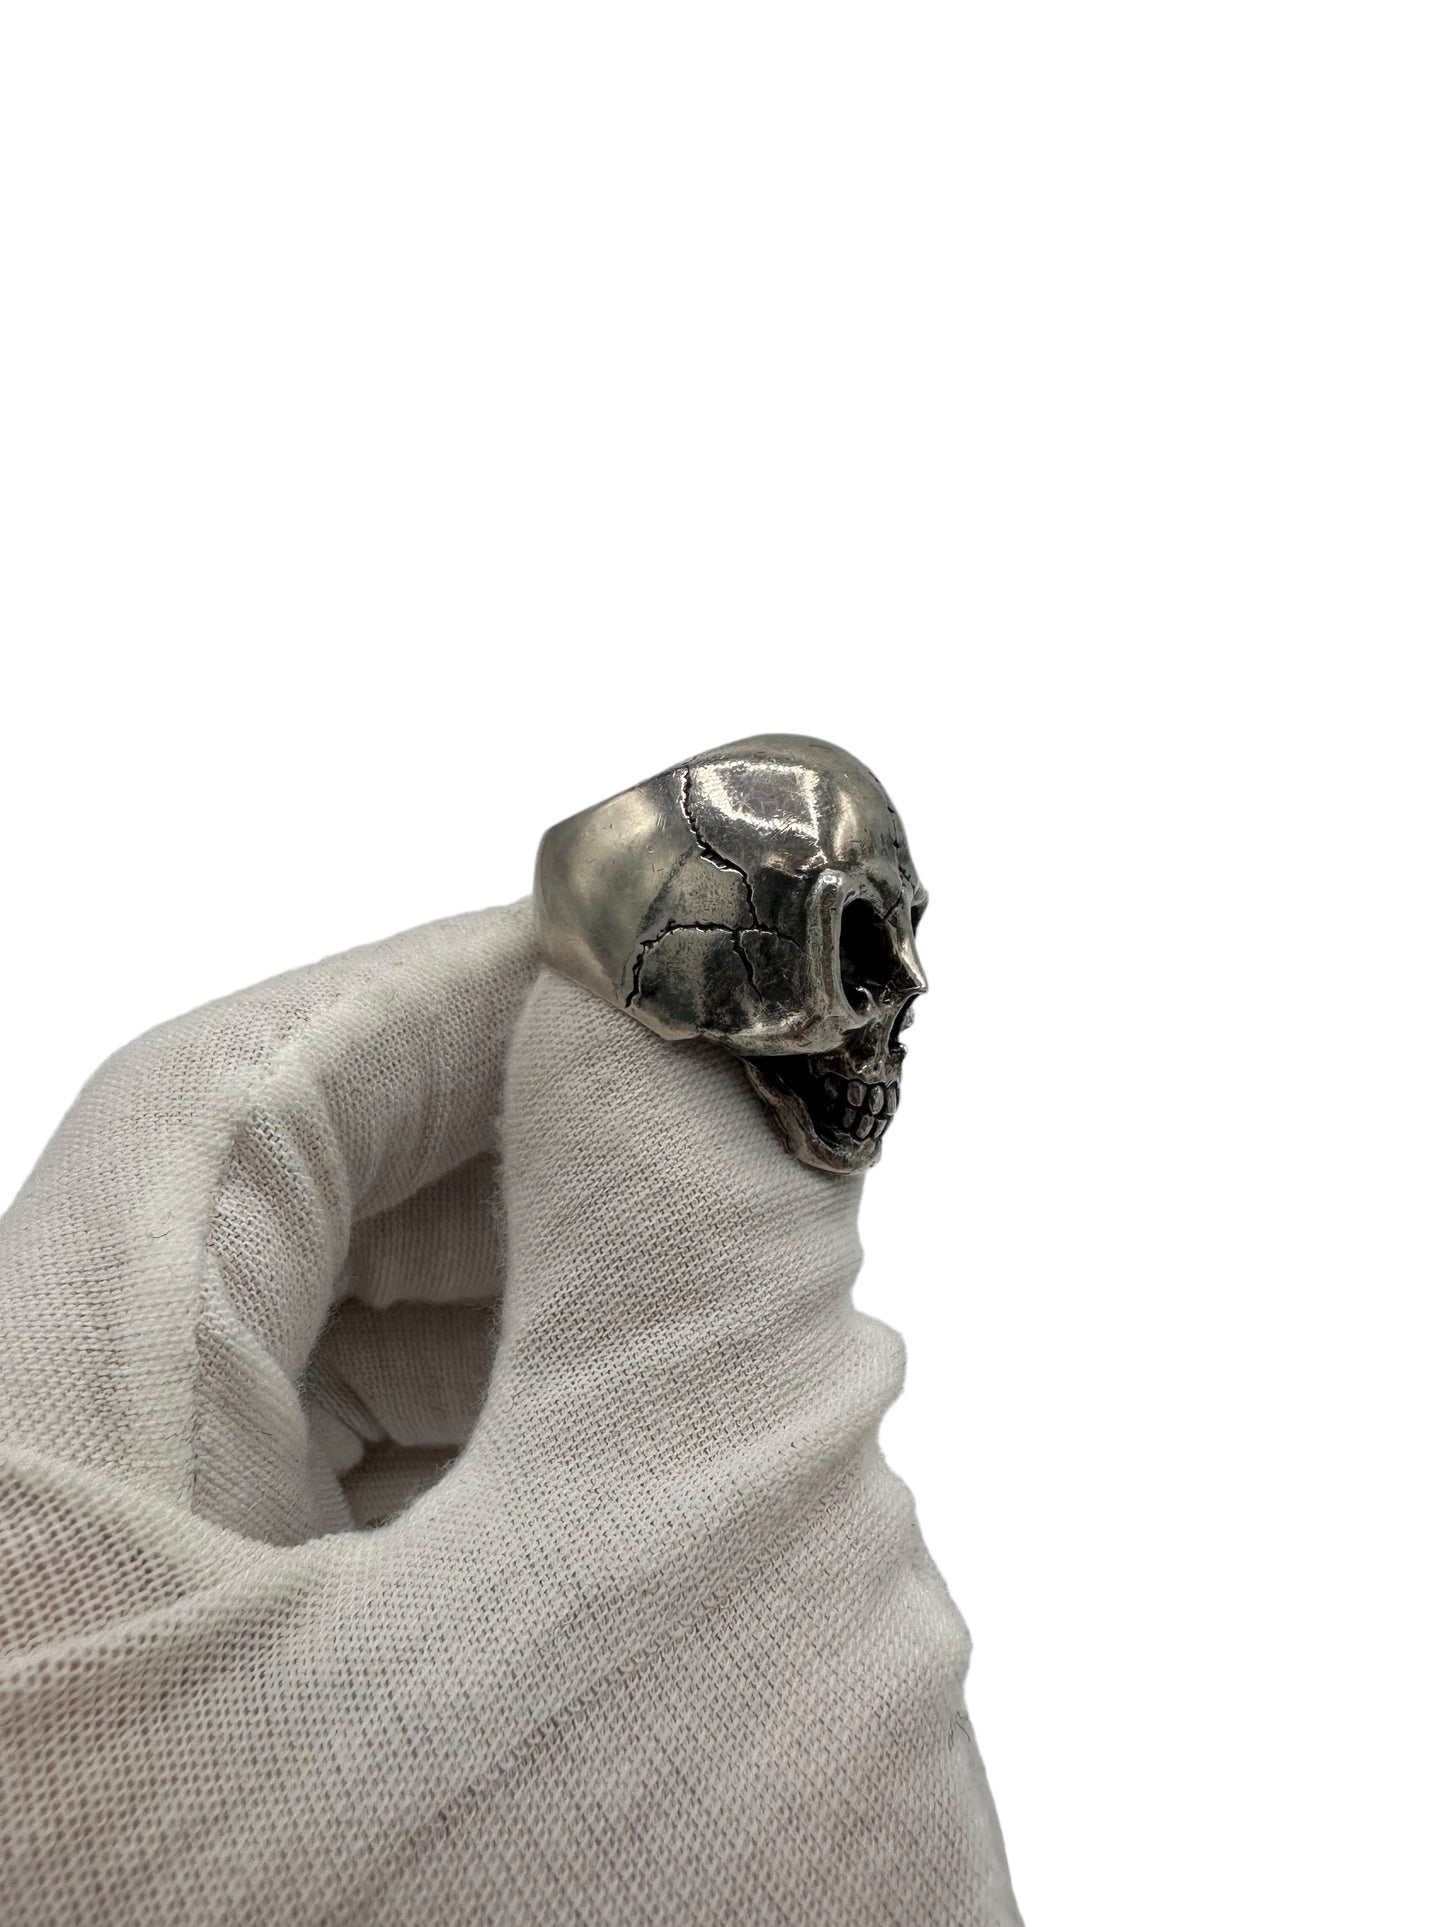 Yohji Yamamoto 950 Silver Alien Skull Ring 7.5 US